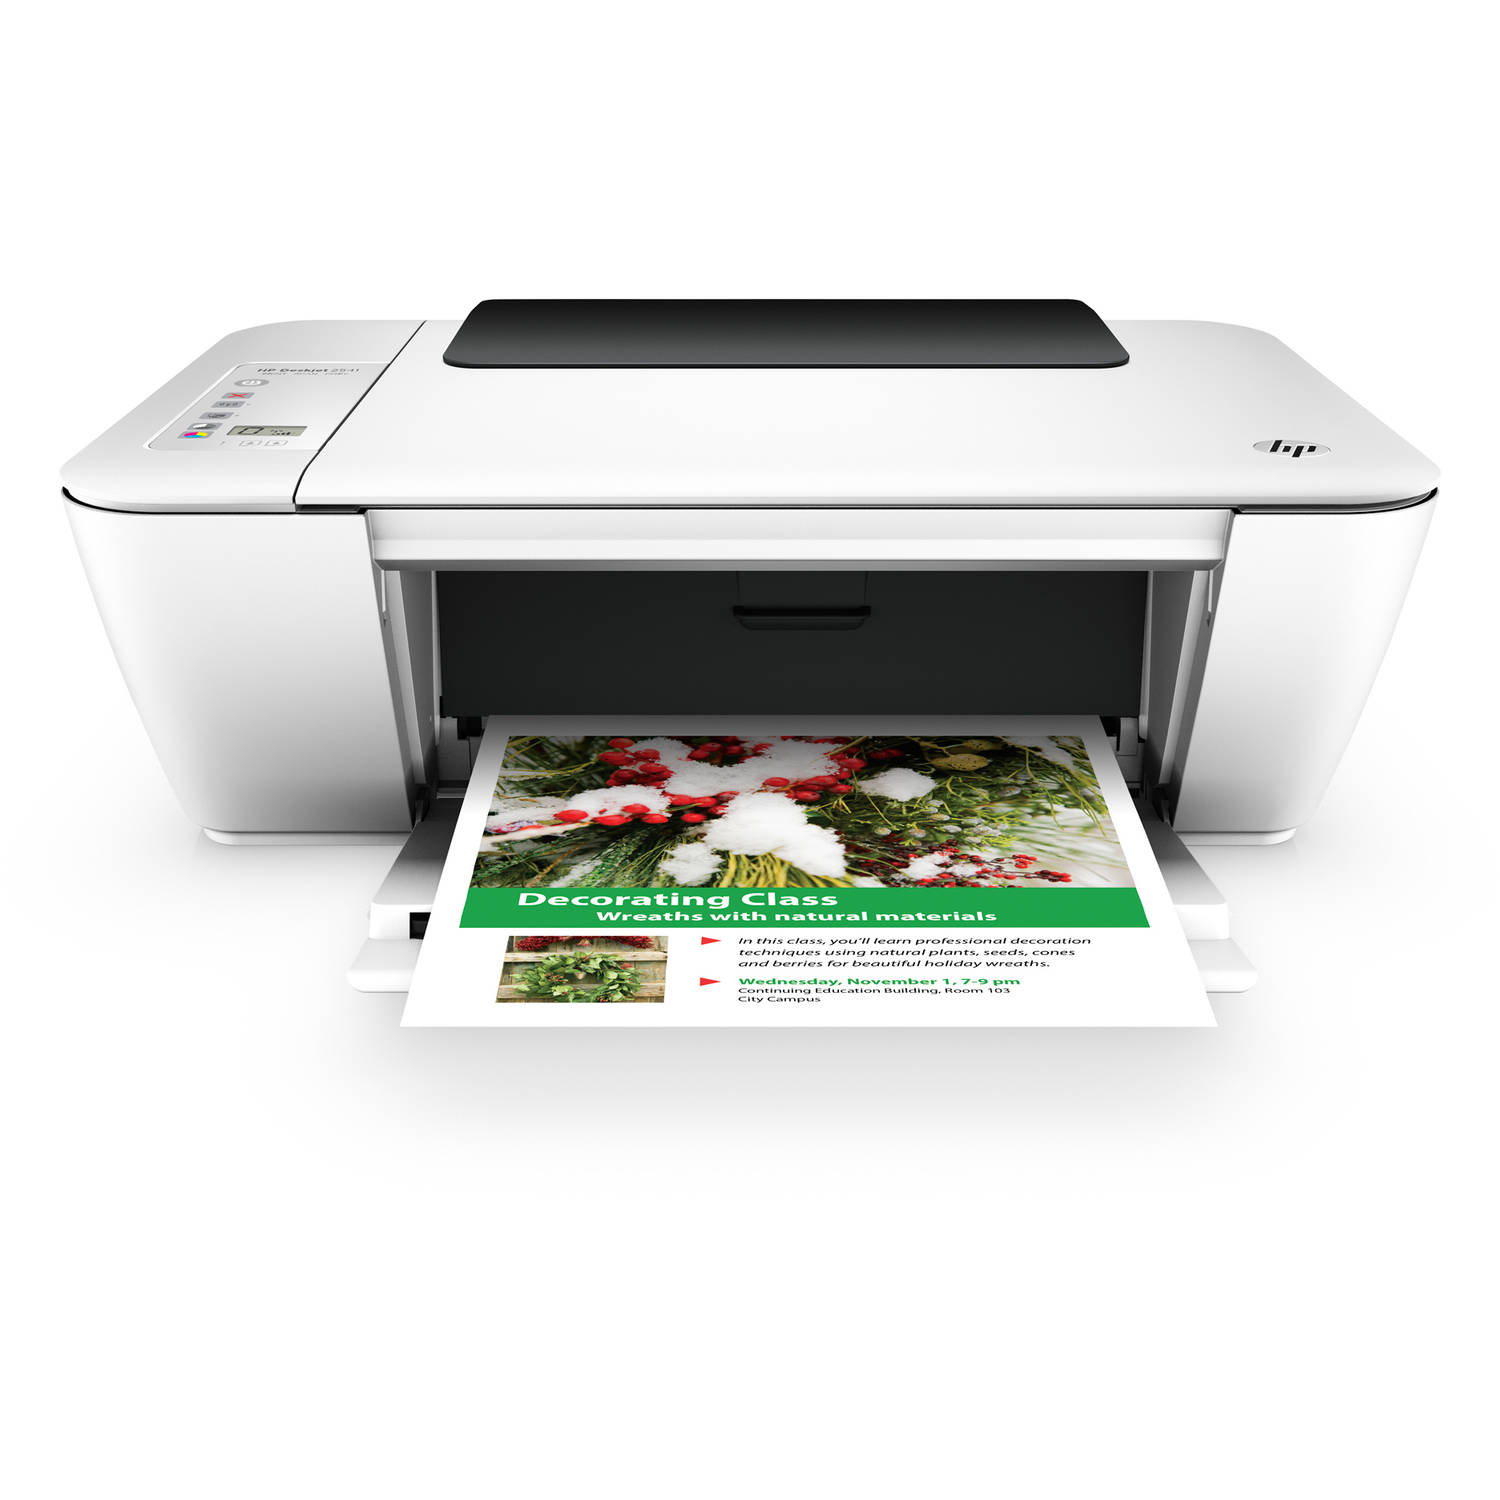 HP DeskJet 2541 Limited Edition - image 1 of 4